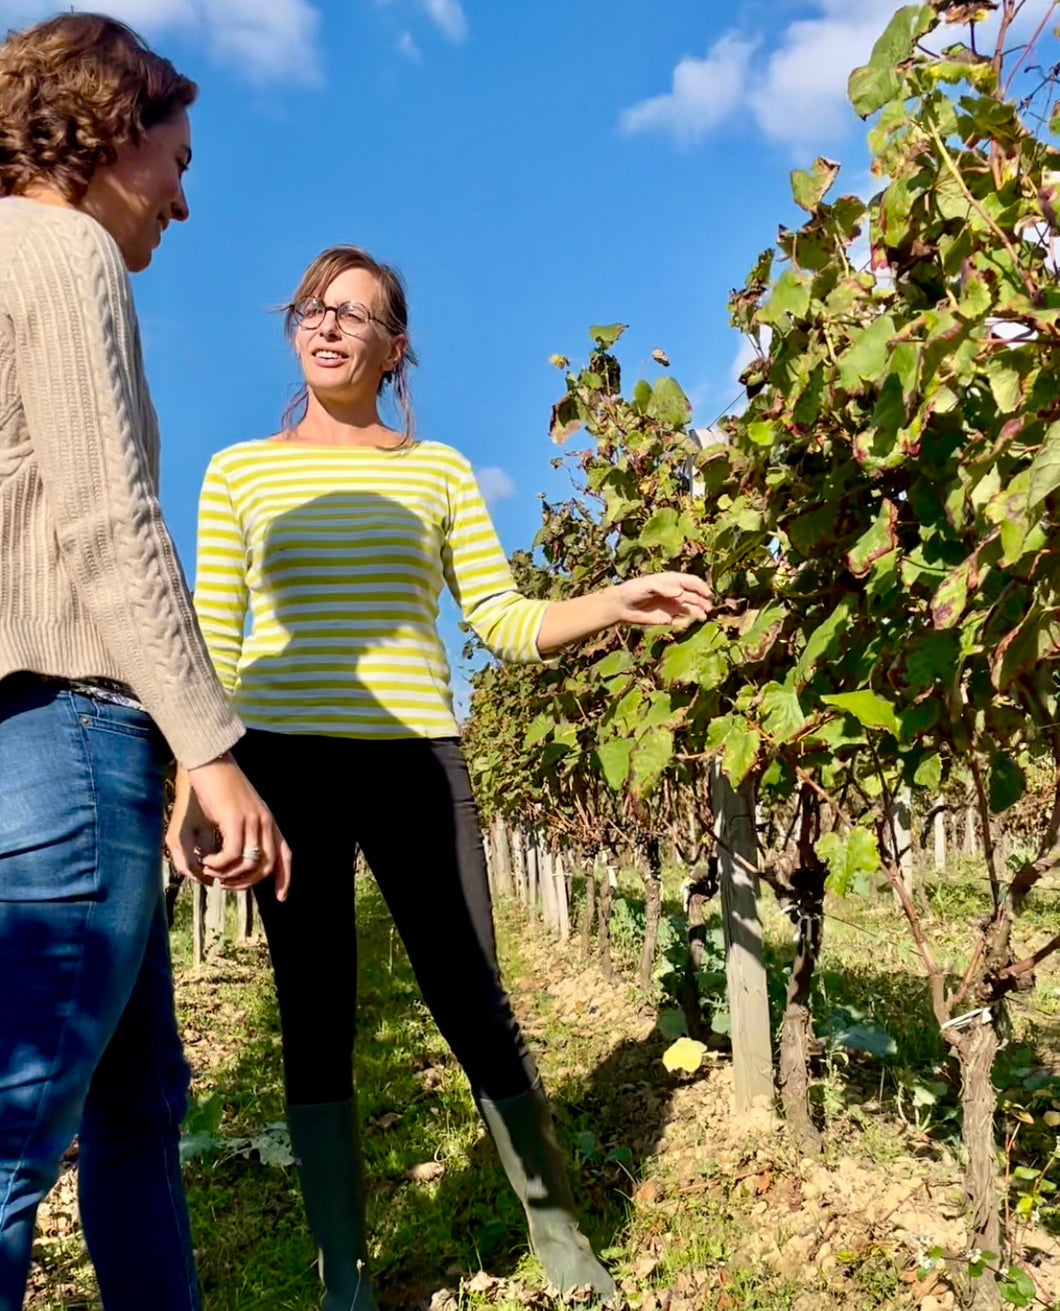 Réservation expérience - La viticulture bio au fil des saisons